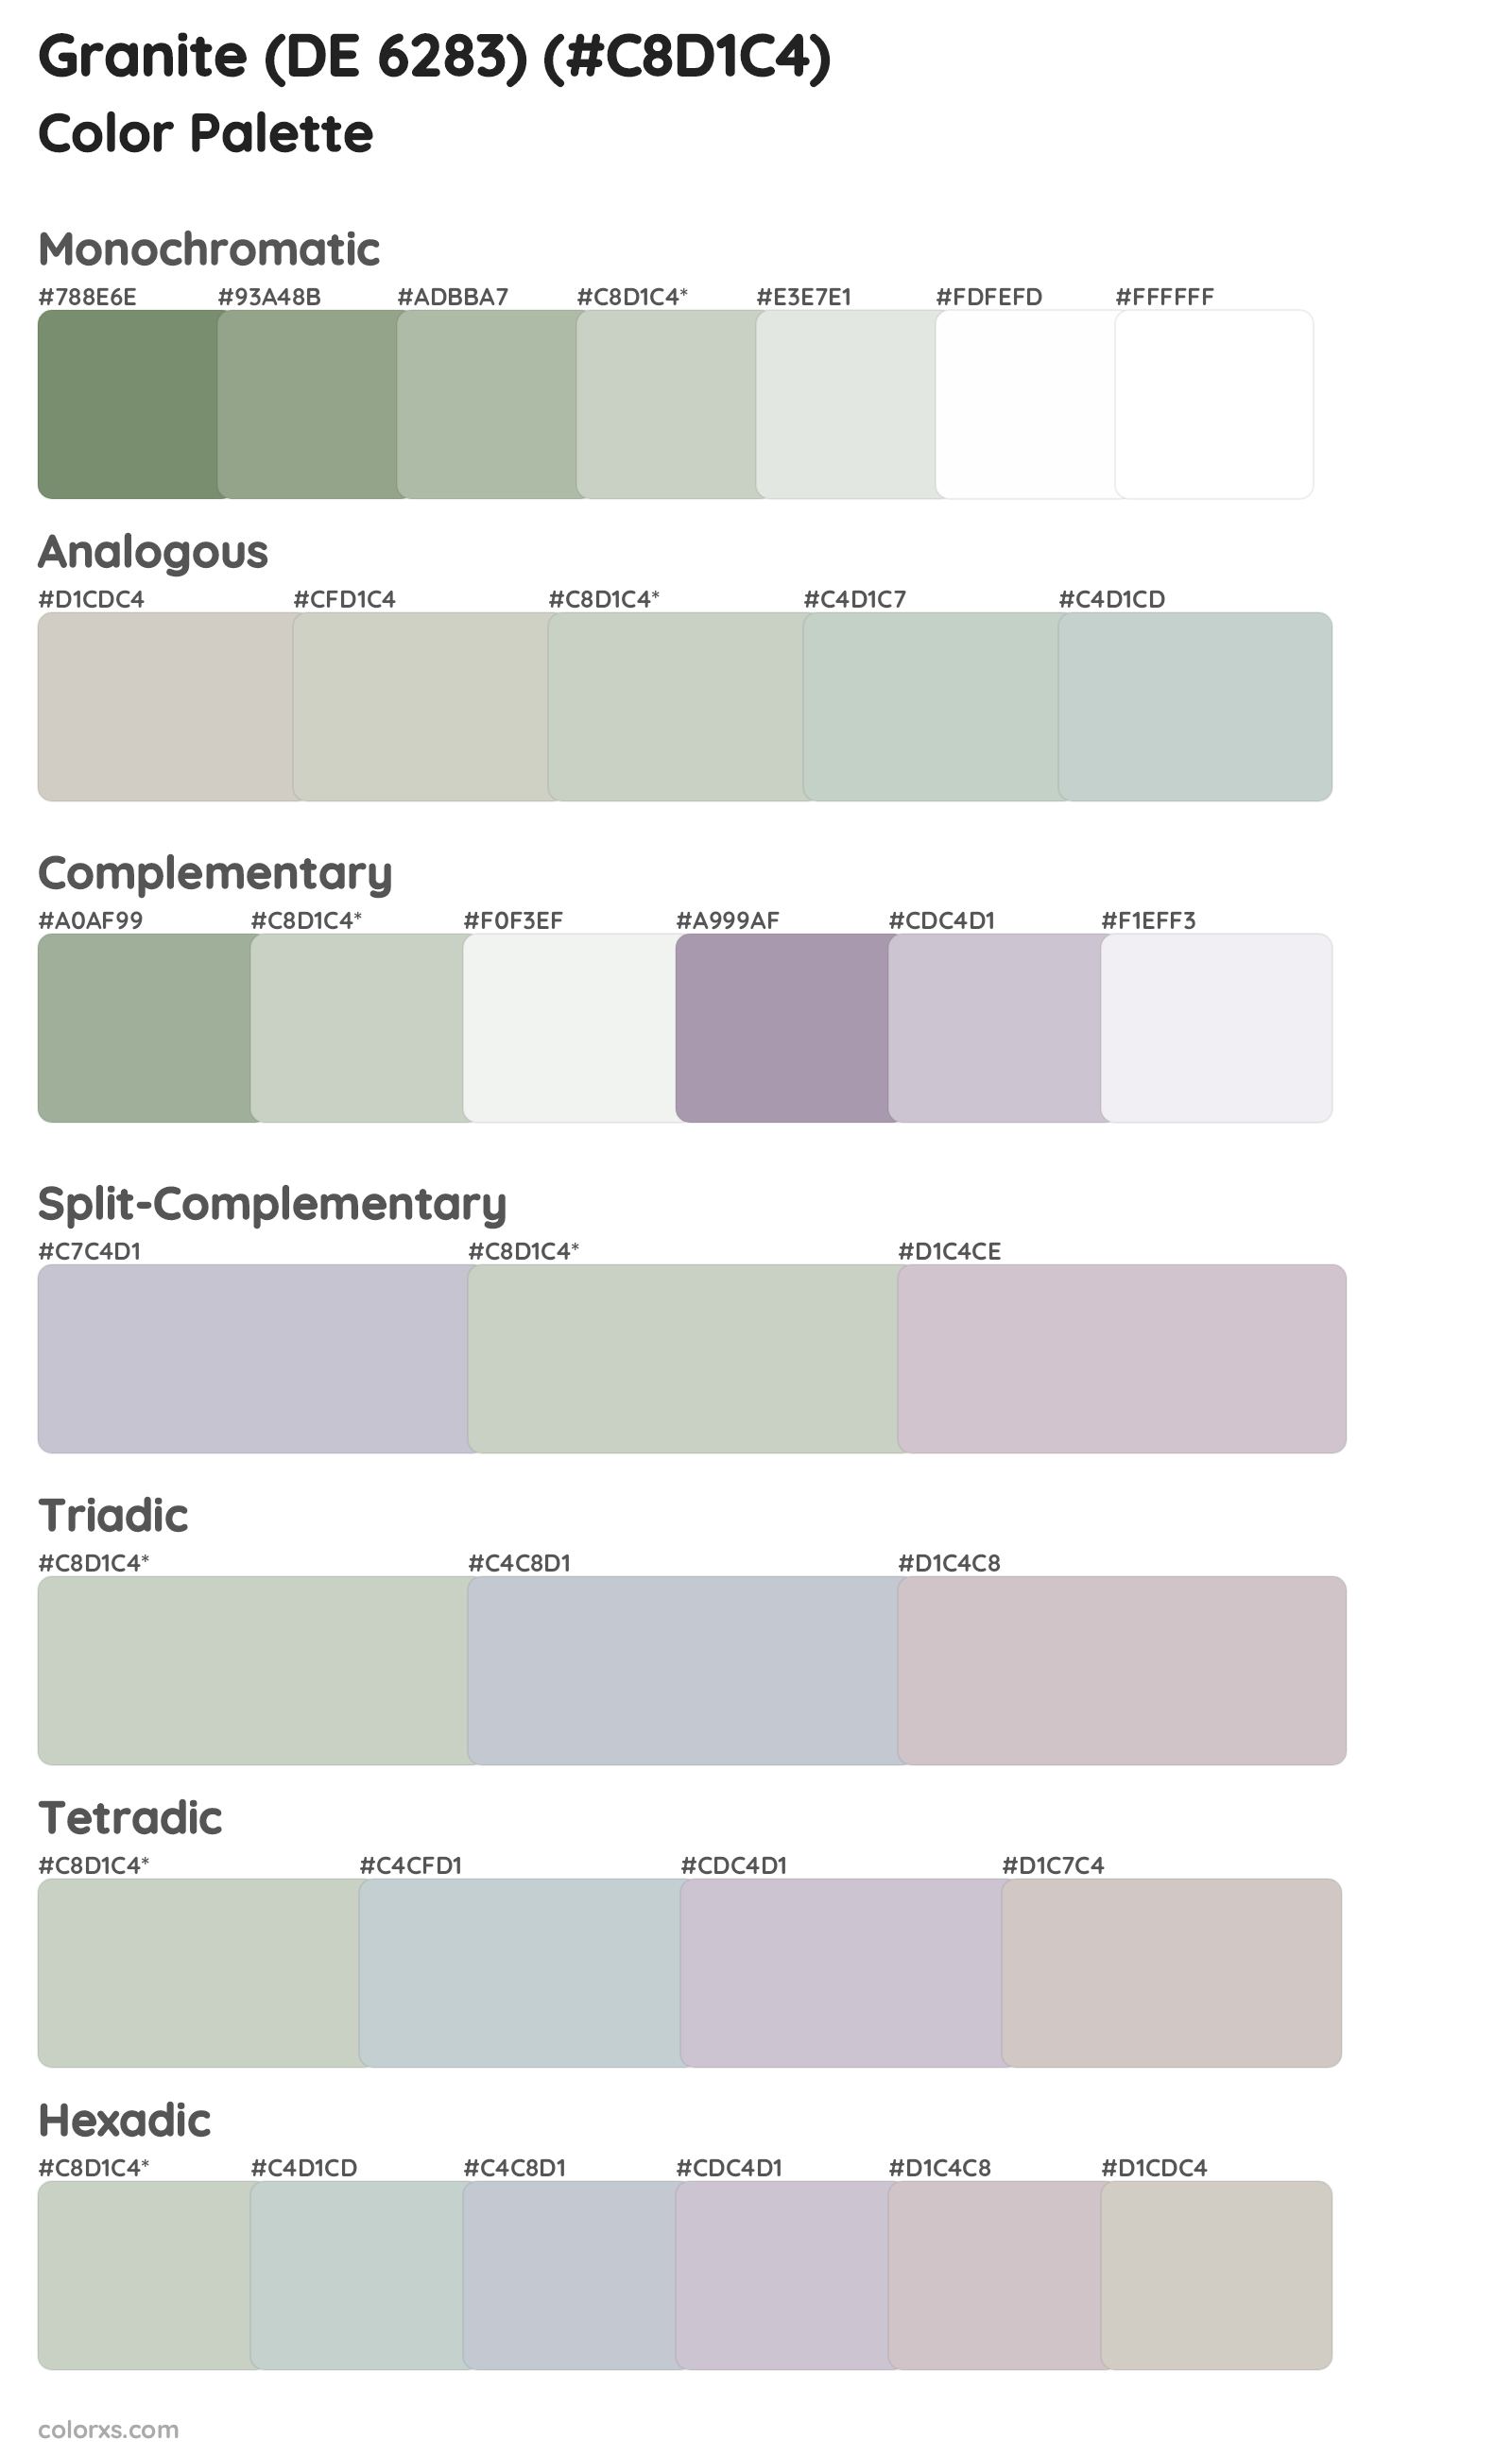 Granite (DE 6283) Color Scheme Palettes